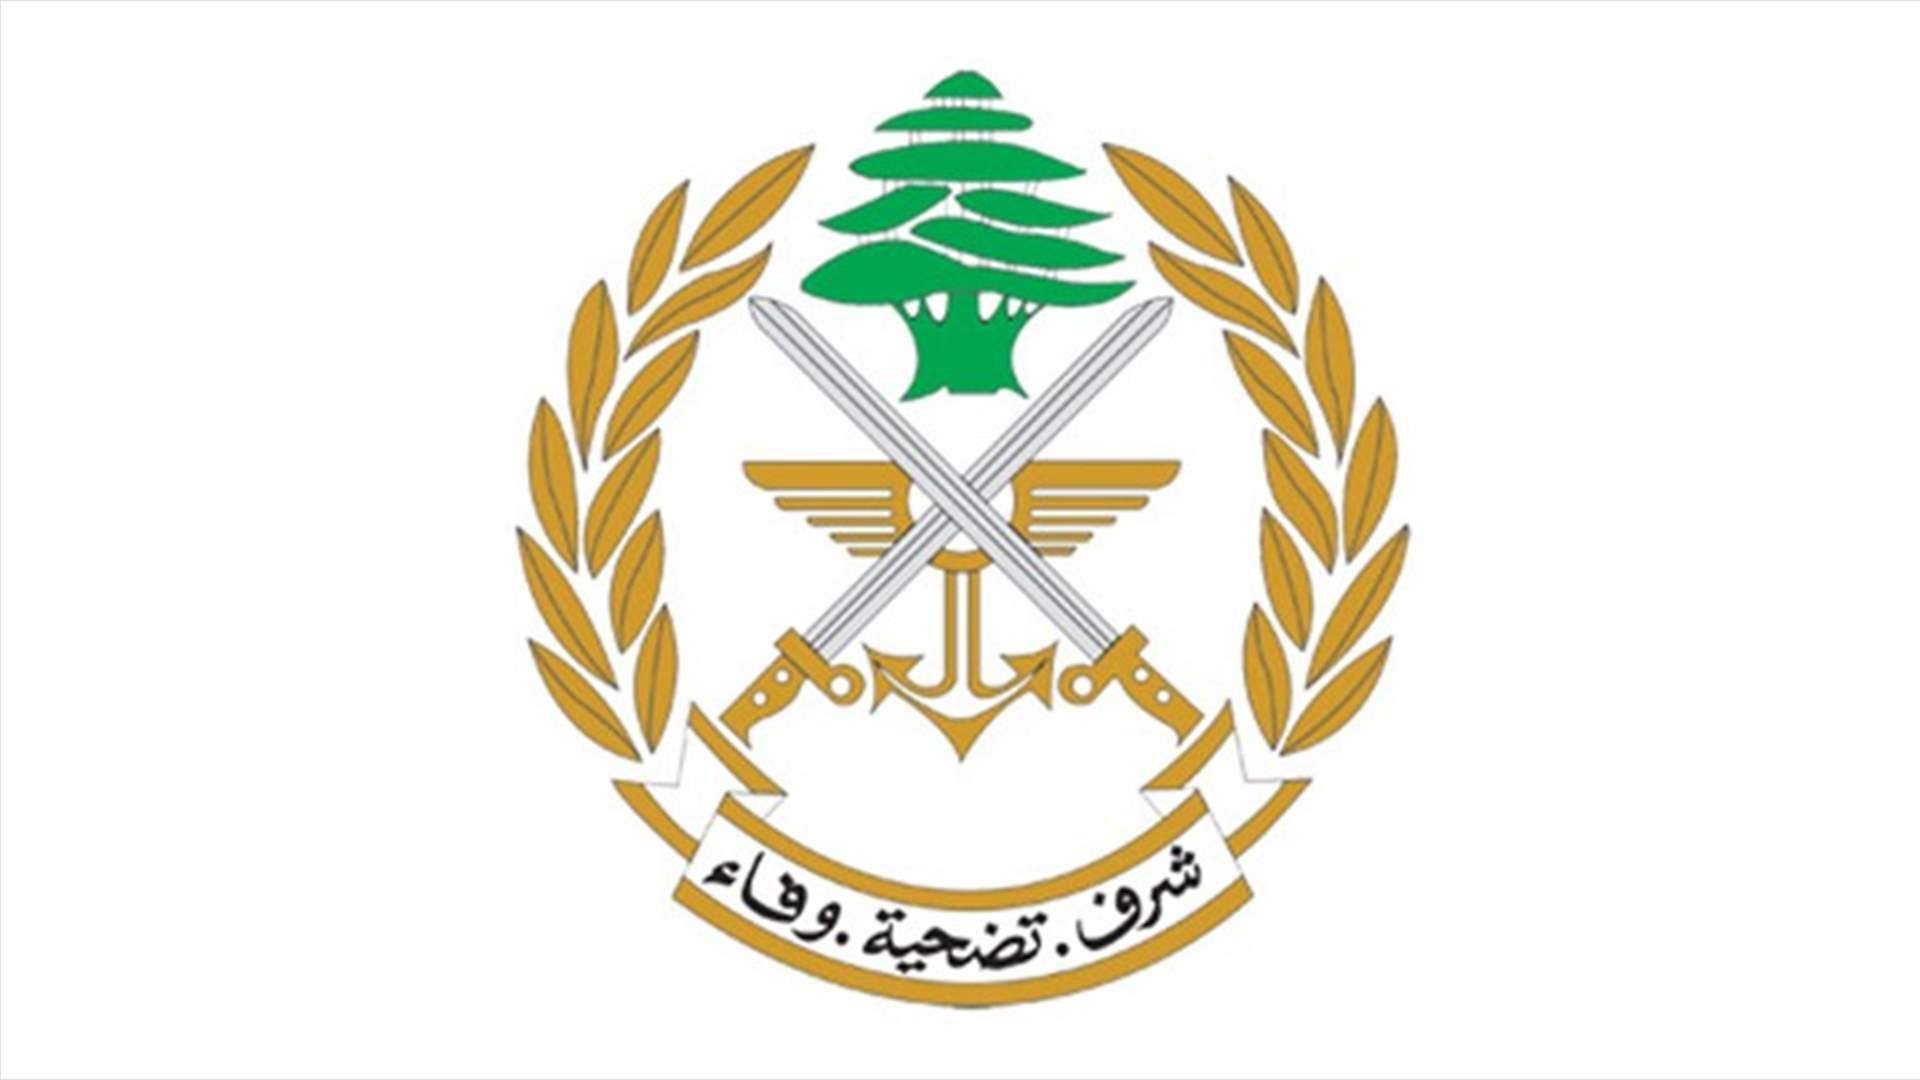 الجيش: عملية دهم وتوقيف مرتكبي أعمال سرقة ومطلوبين في منطقتي غوسطا والمرح - الهرمل